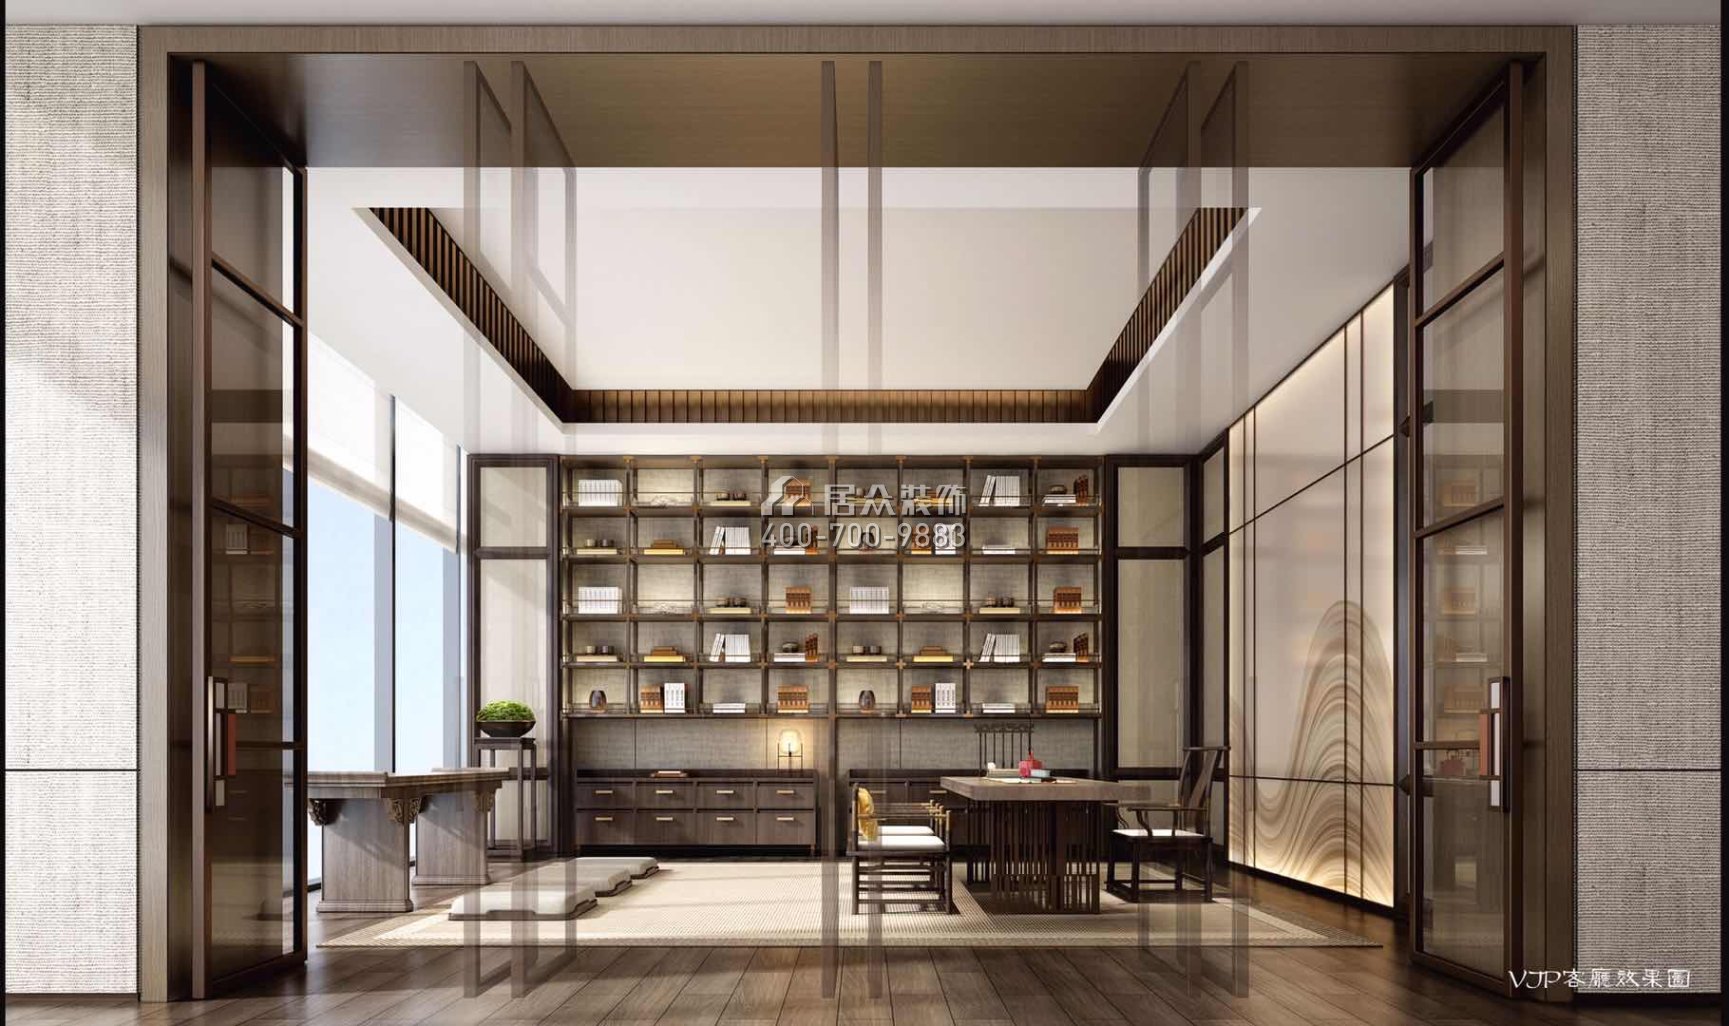 豐泰觀山碧水380平方米現代簡約風格別墅戶型書房裝修效果圖